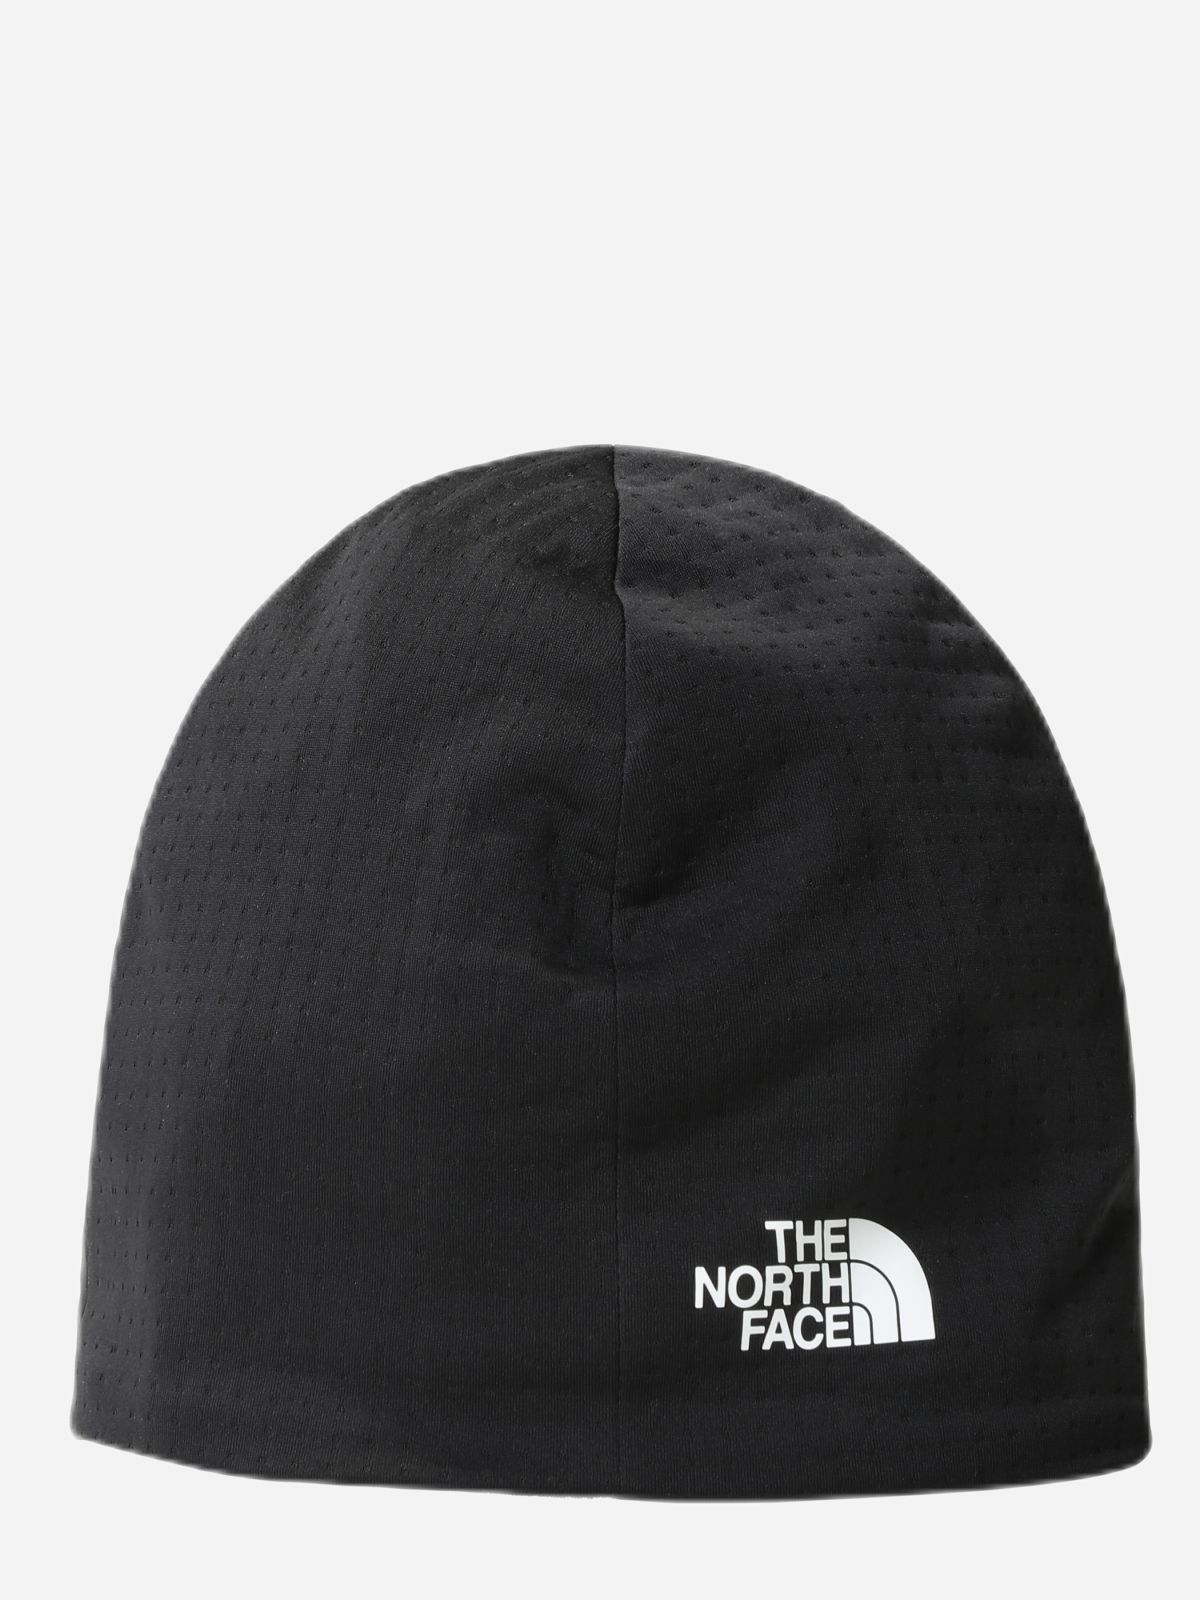  כובע גרב עם לוגו / גברים של THE NORTH FACE